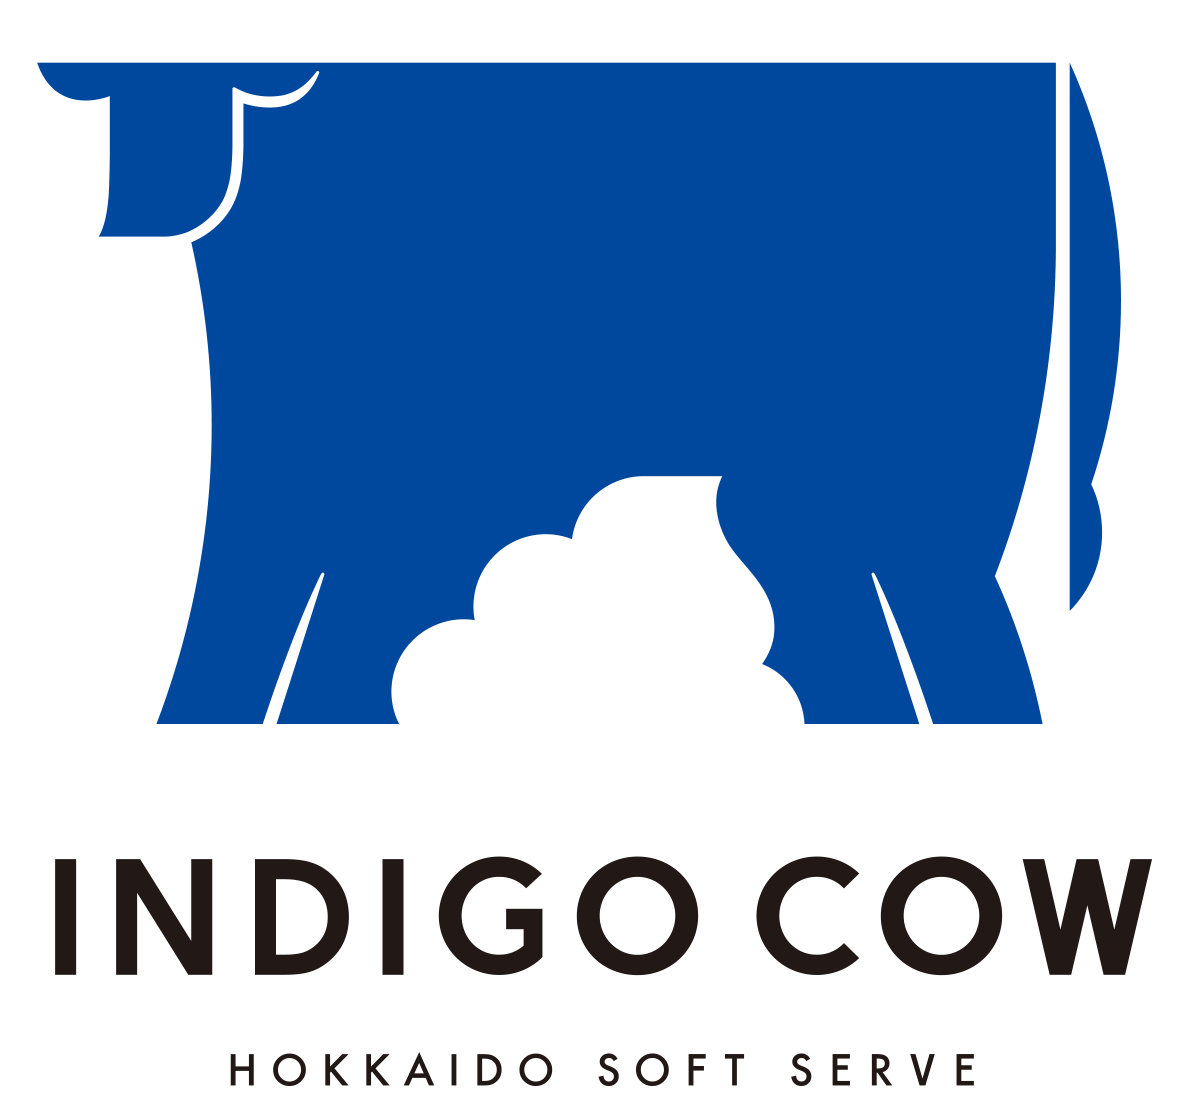 Indigo Cow logo of a blue cow